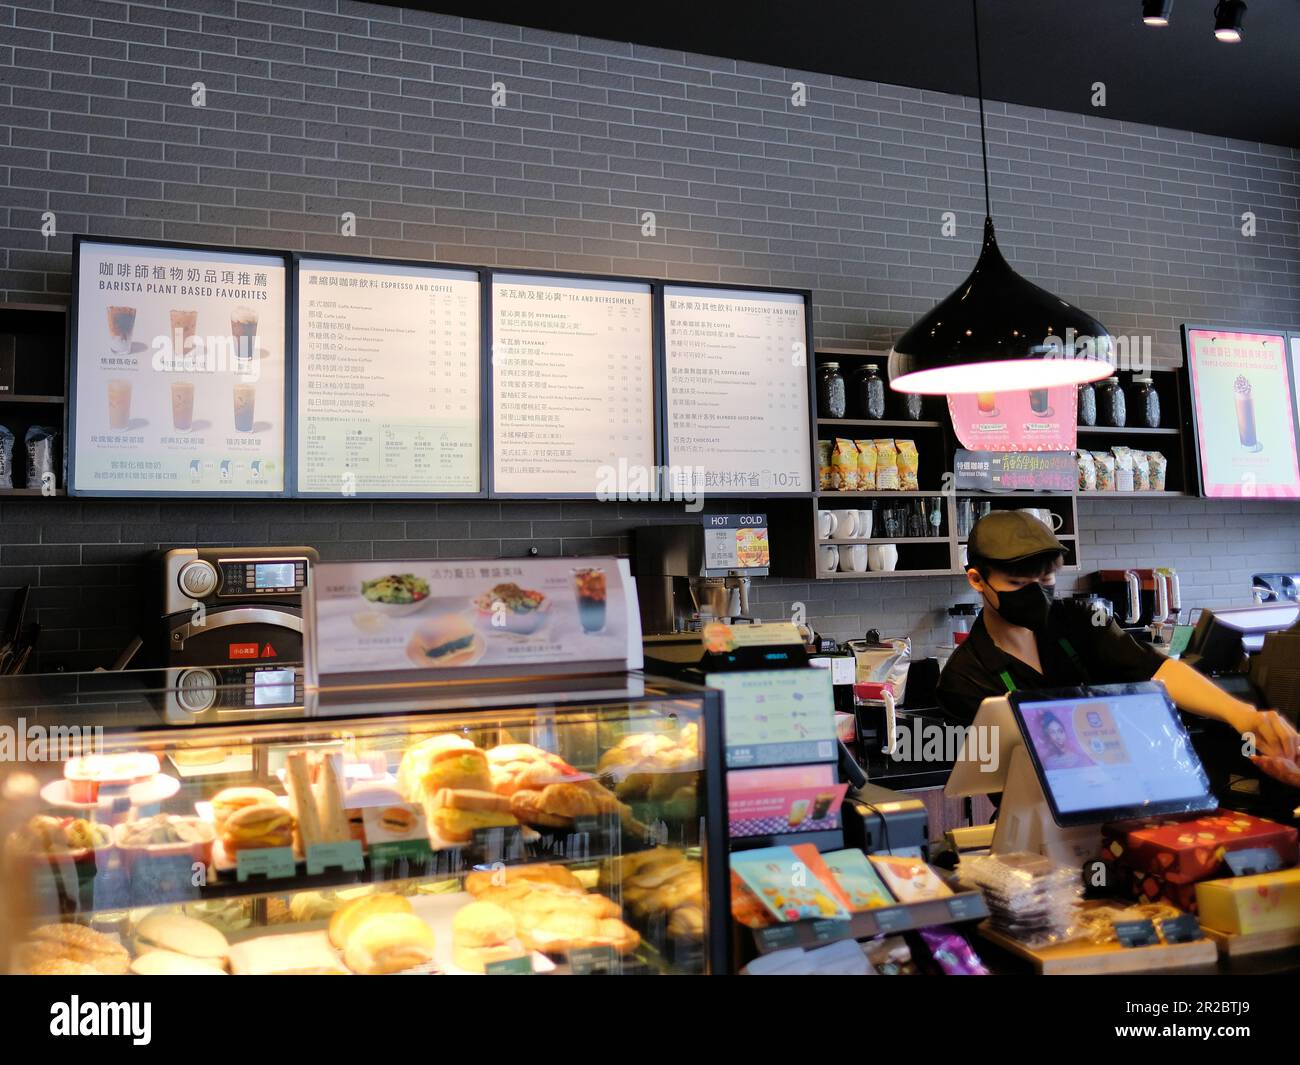 Vista interior de la ubicación de Starbucks Coffee Shop en Kaohsiung, Taiwán; menú de bebidas; intereses de negocios estadounidenses e inversión en el extranjero y en Asia. Foto de stock